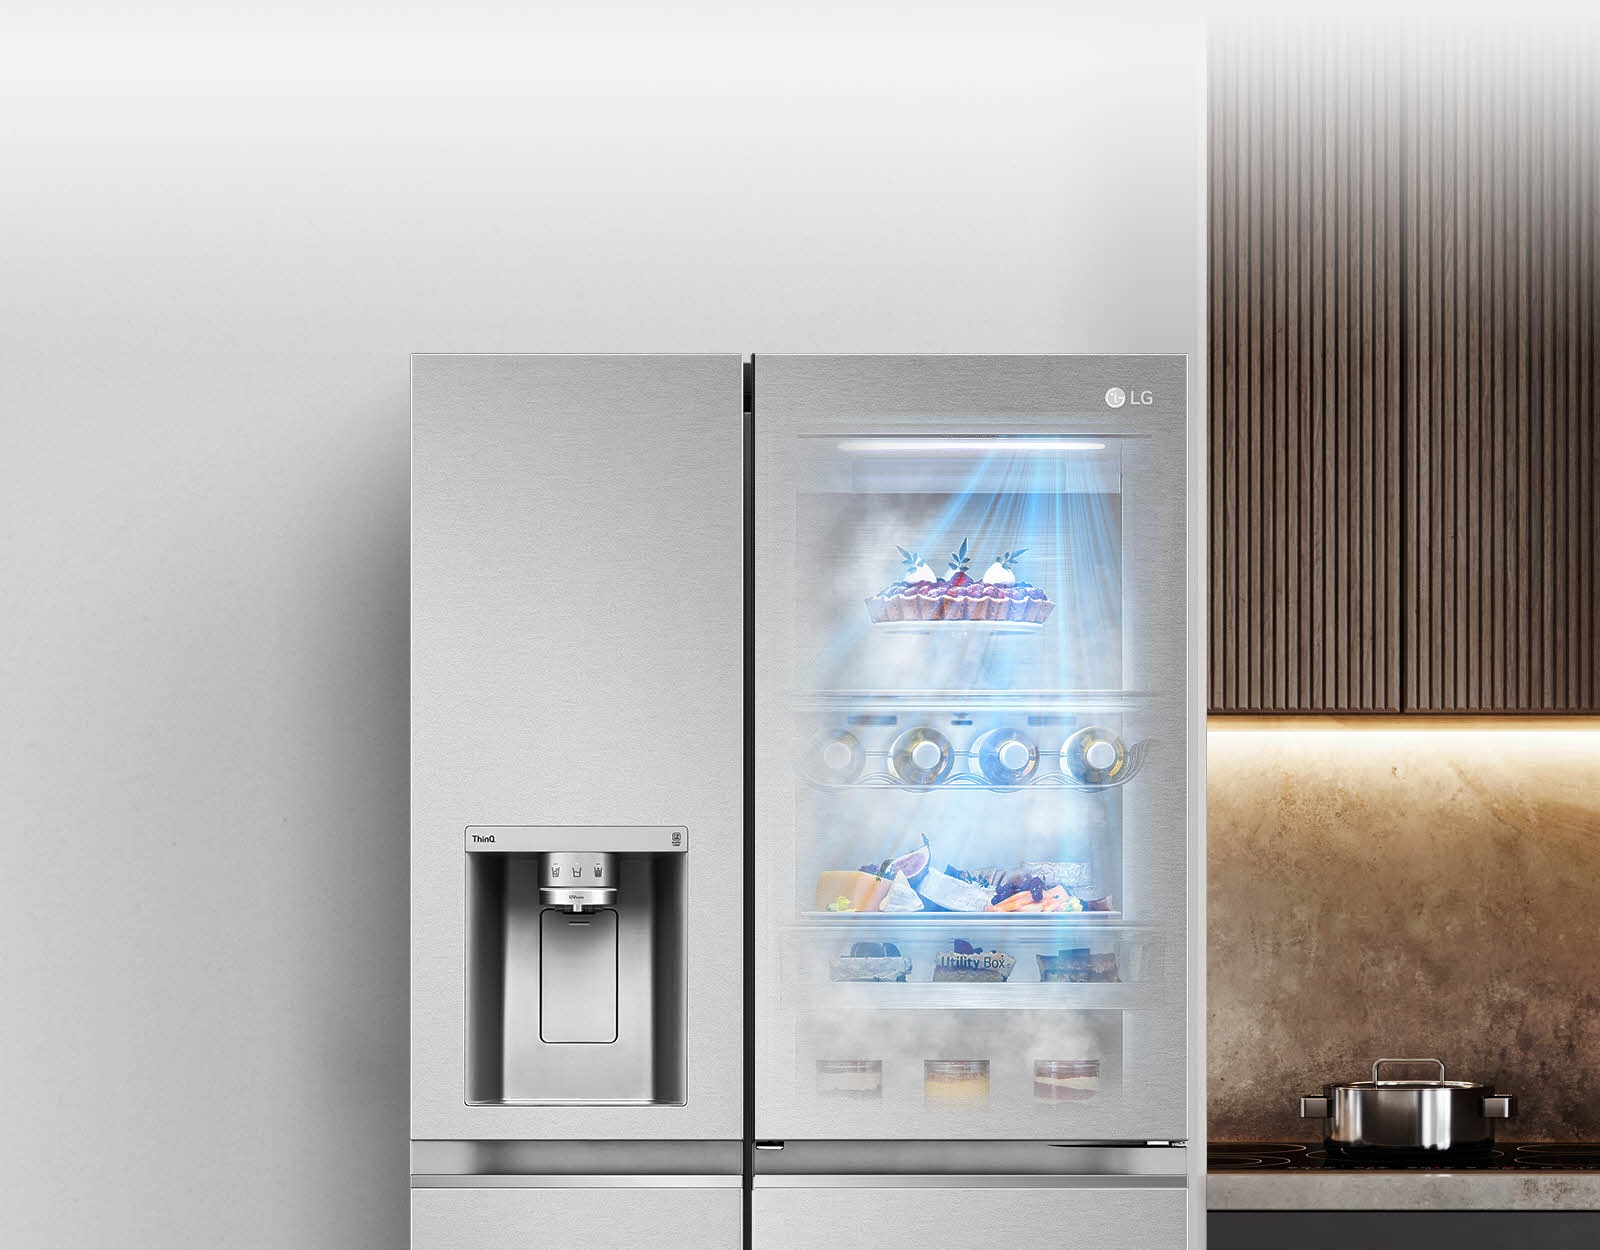 Черный вид спереди на холодильник InstaView со светом внутри.  Содержимое холодильника можно увидеть через дверцу InstaView.  Синий свет, излучаемый функцией «DoorCooling», освещал содержимое холодильника.